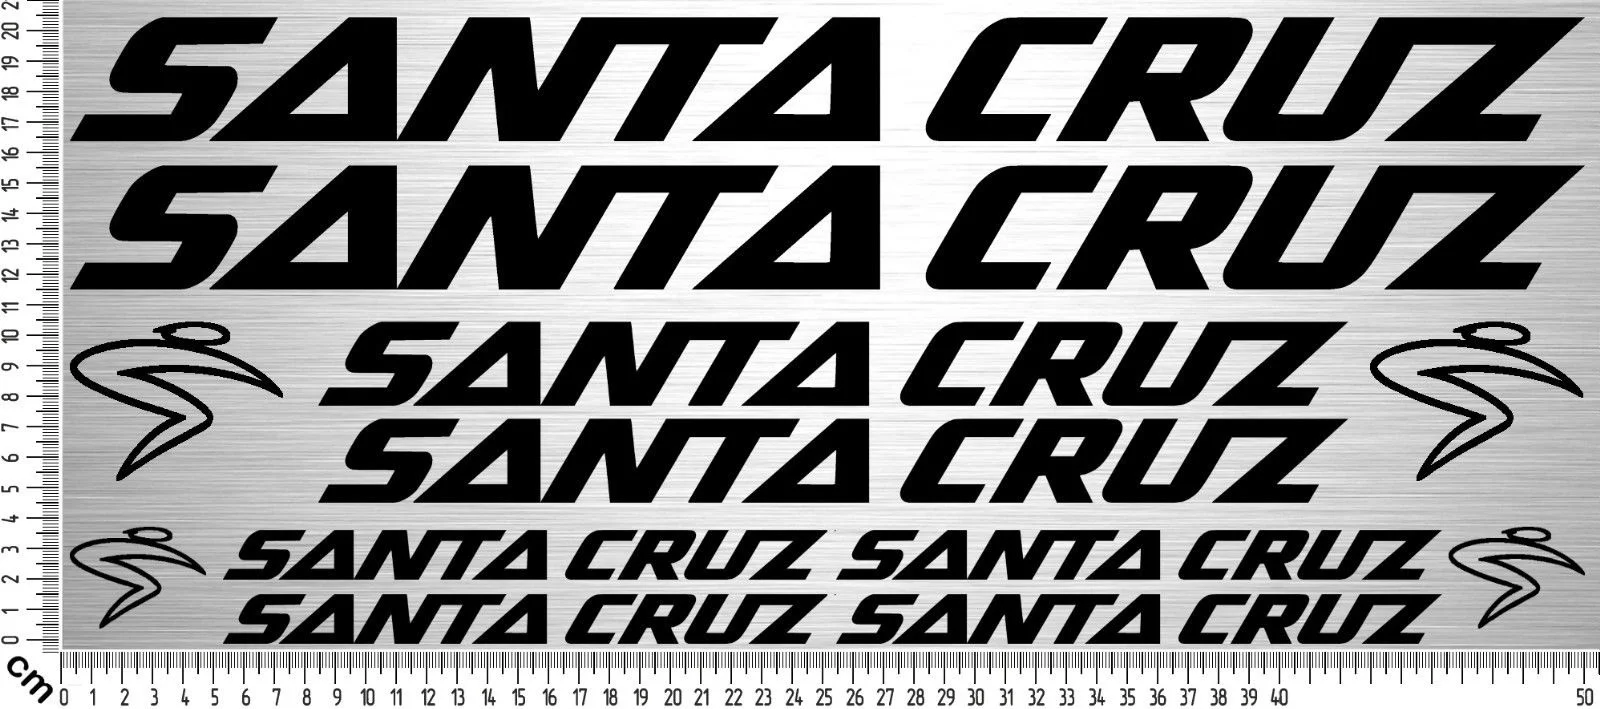 Para 12xsanta CRUZ Set 2 | Fahrrad raymen auskleber Bike Frame Sticker 12 calcomanías de estilo de coche